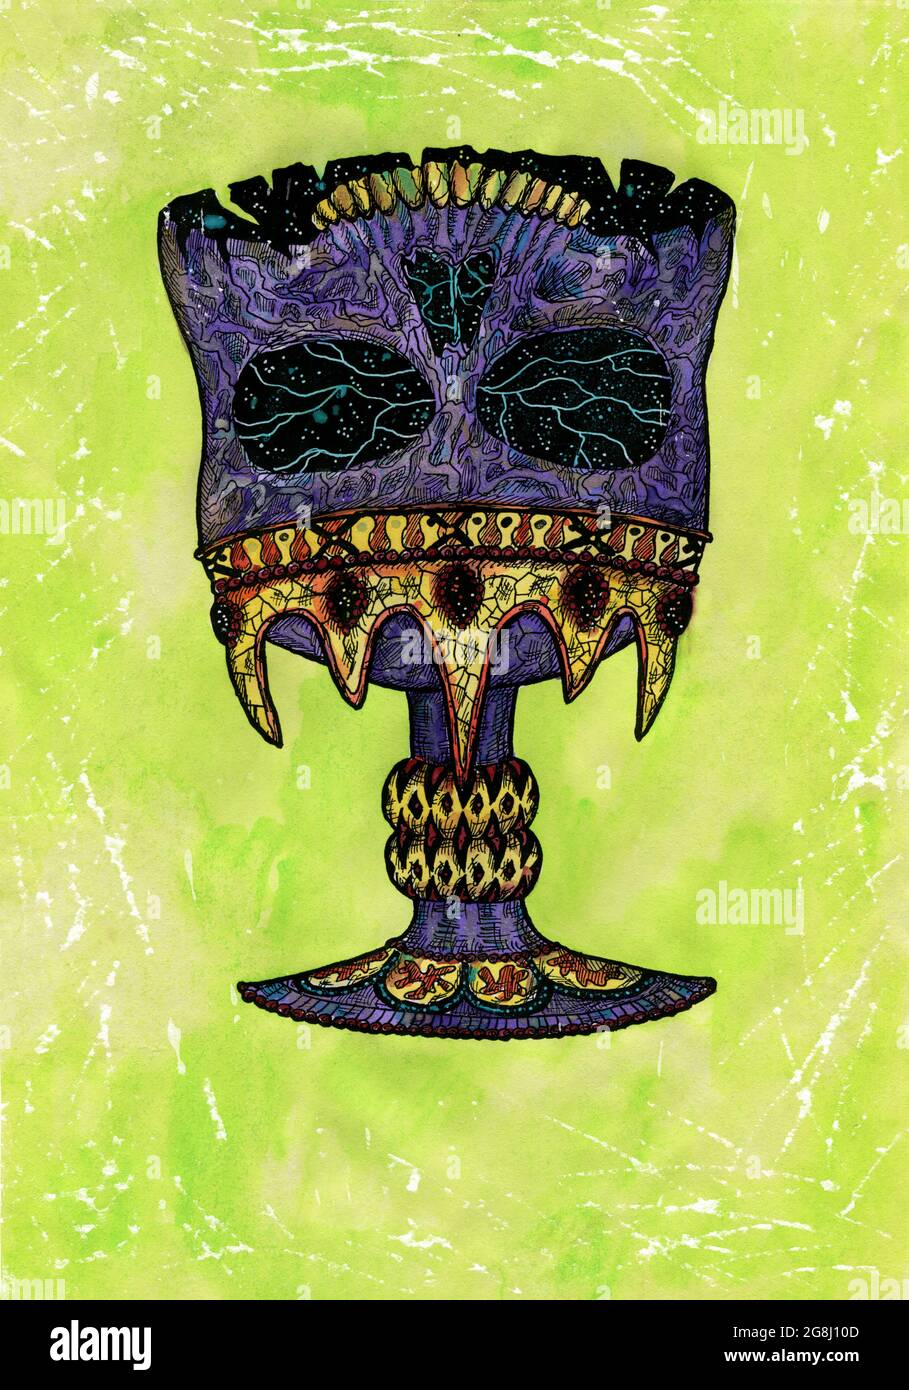 Gestylte Aquarell-Illustration von gruseligen Schädel als Tasse in Krone auf grünem Hintergrund. Mystische Zeichnung für Halloween mit esoterischer, gotischer, okkulter Stockfoto